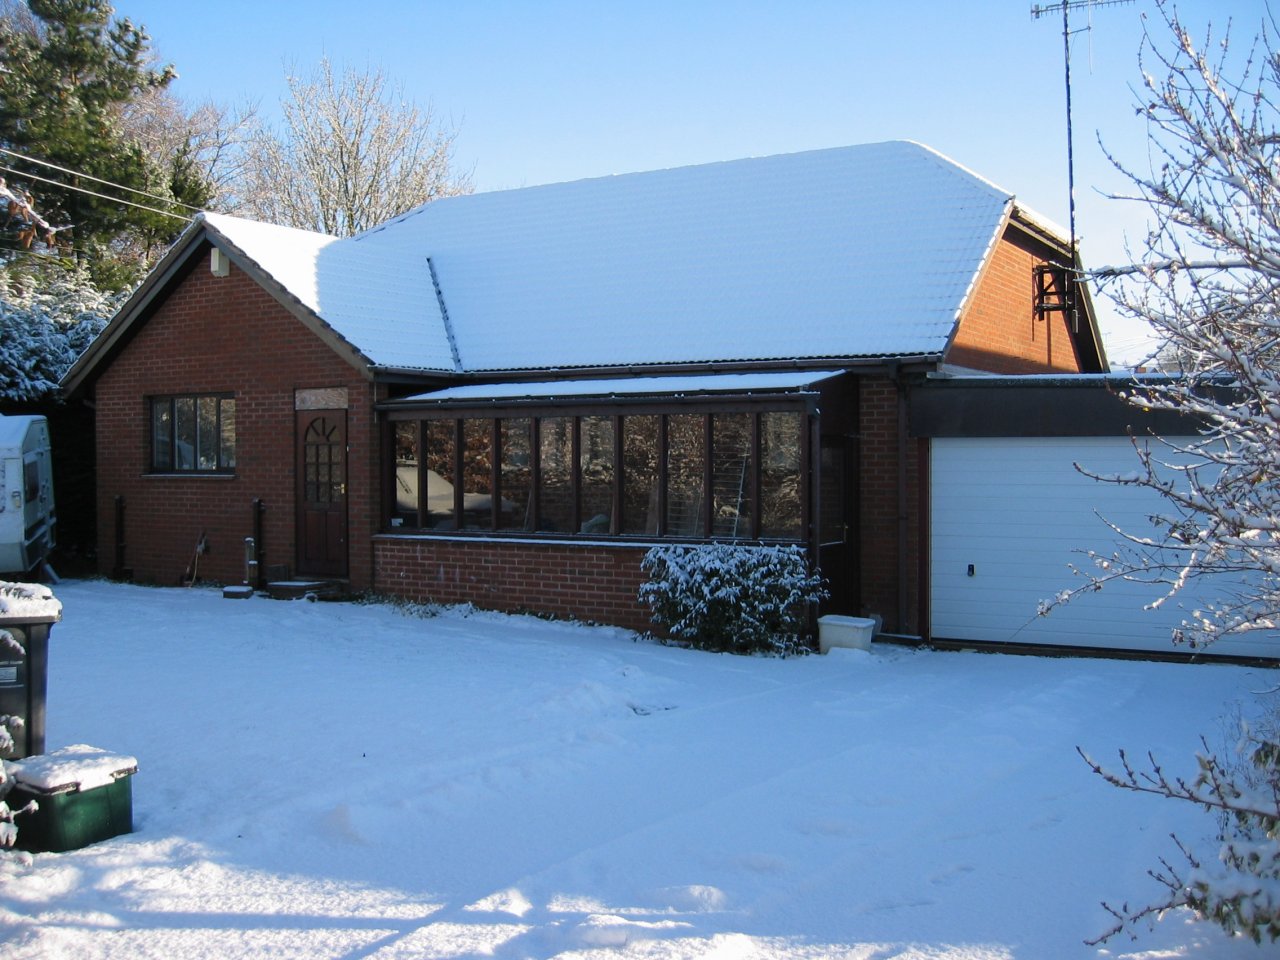 view of front garden 18 Dec 2010.jpg (220886 bytes)